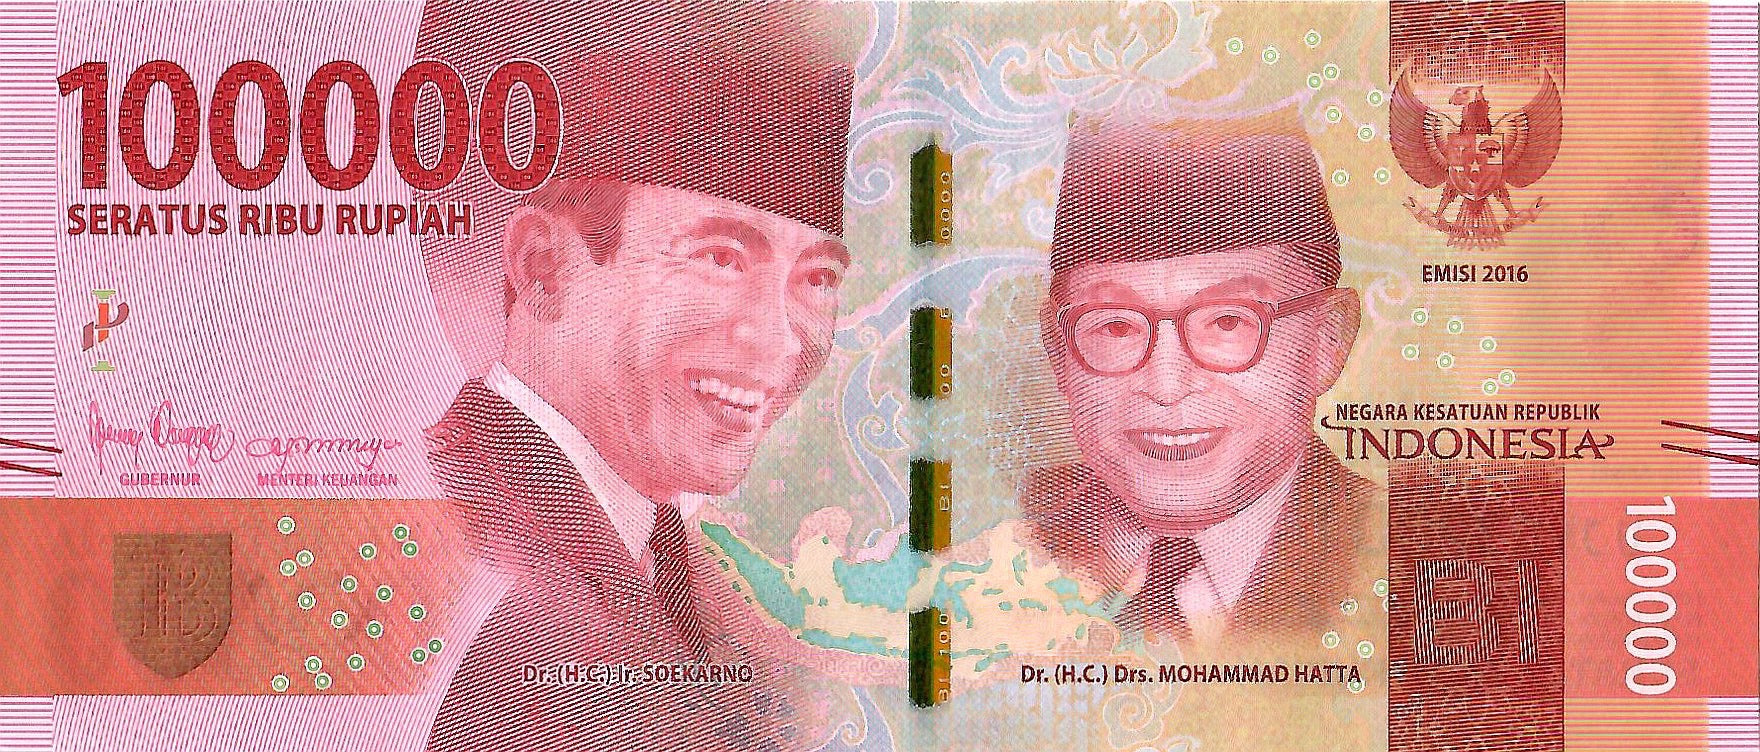 Indonesia 100,000 Rupiah Banknote, P-160 - Circulated